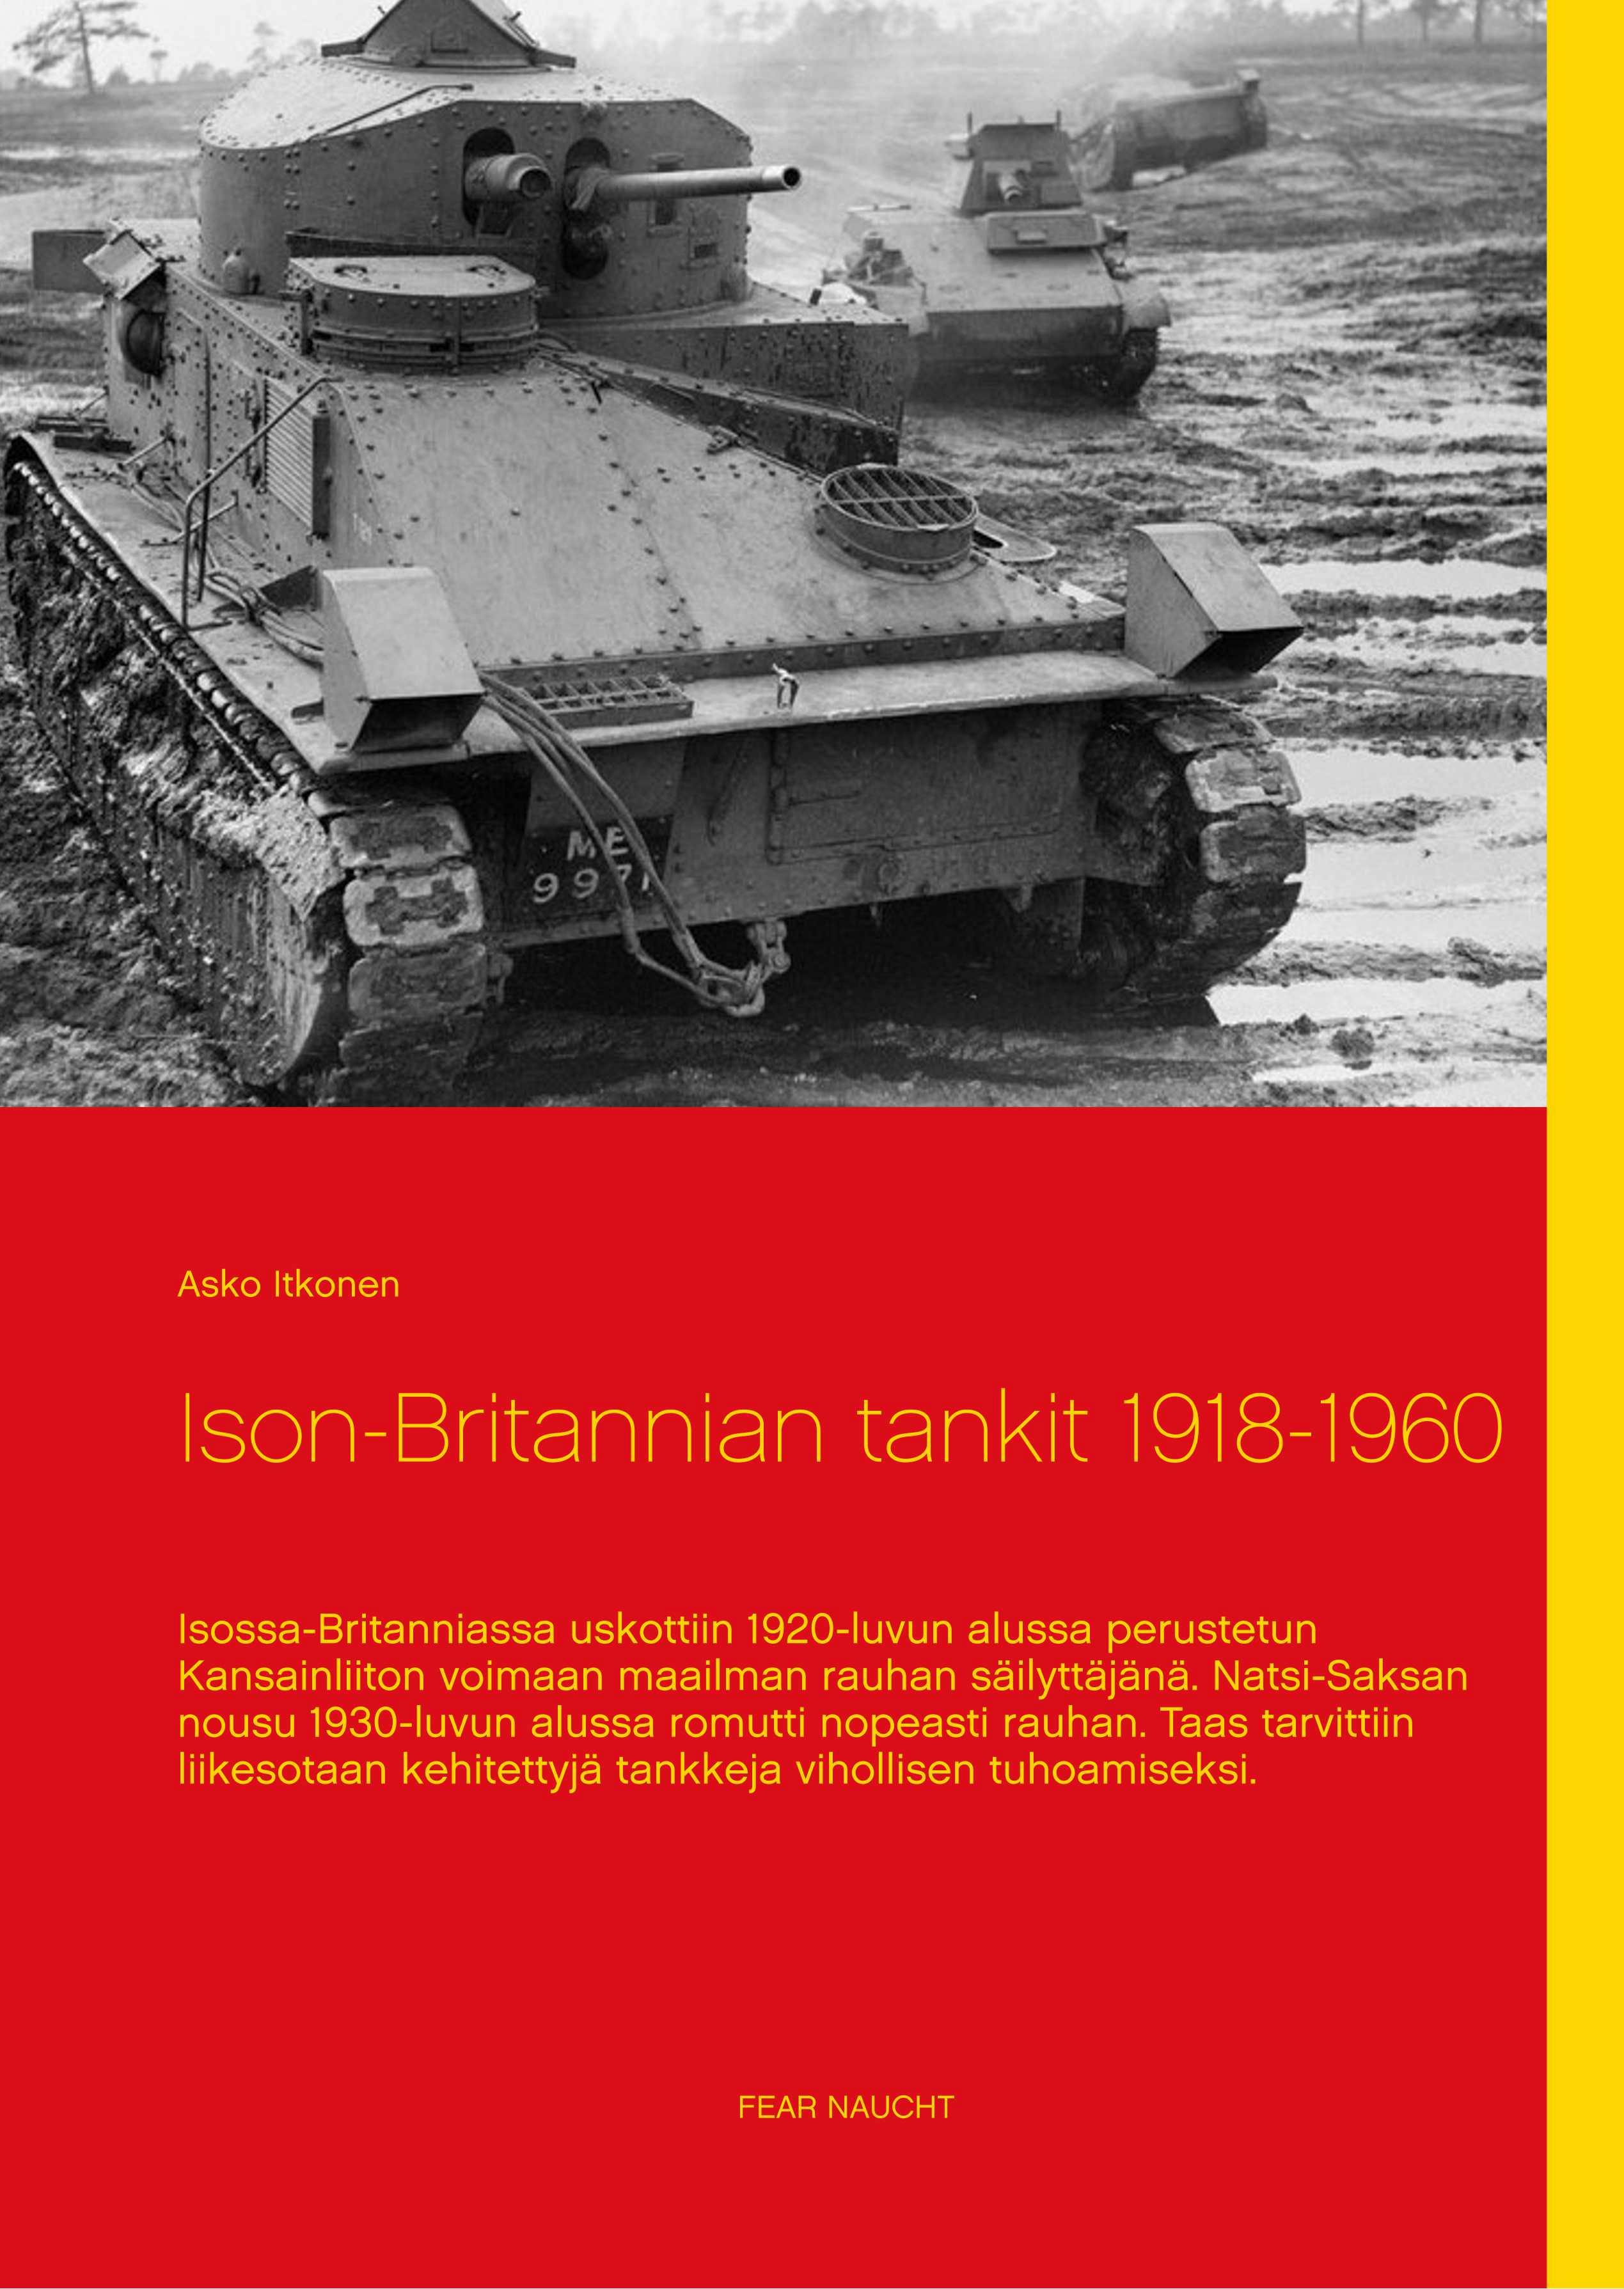 Ison-Britannian tankit 1918-1960 - Asko Itkonen